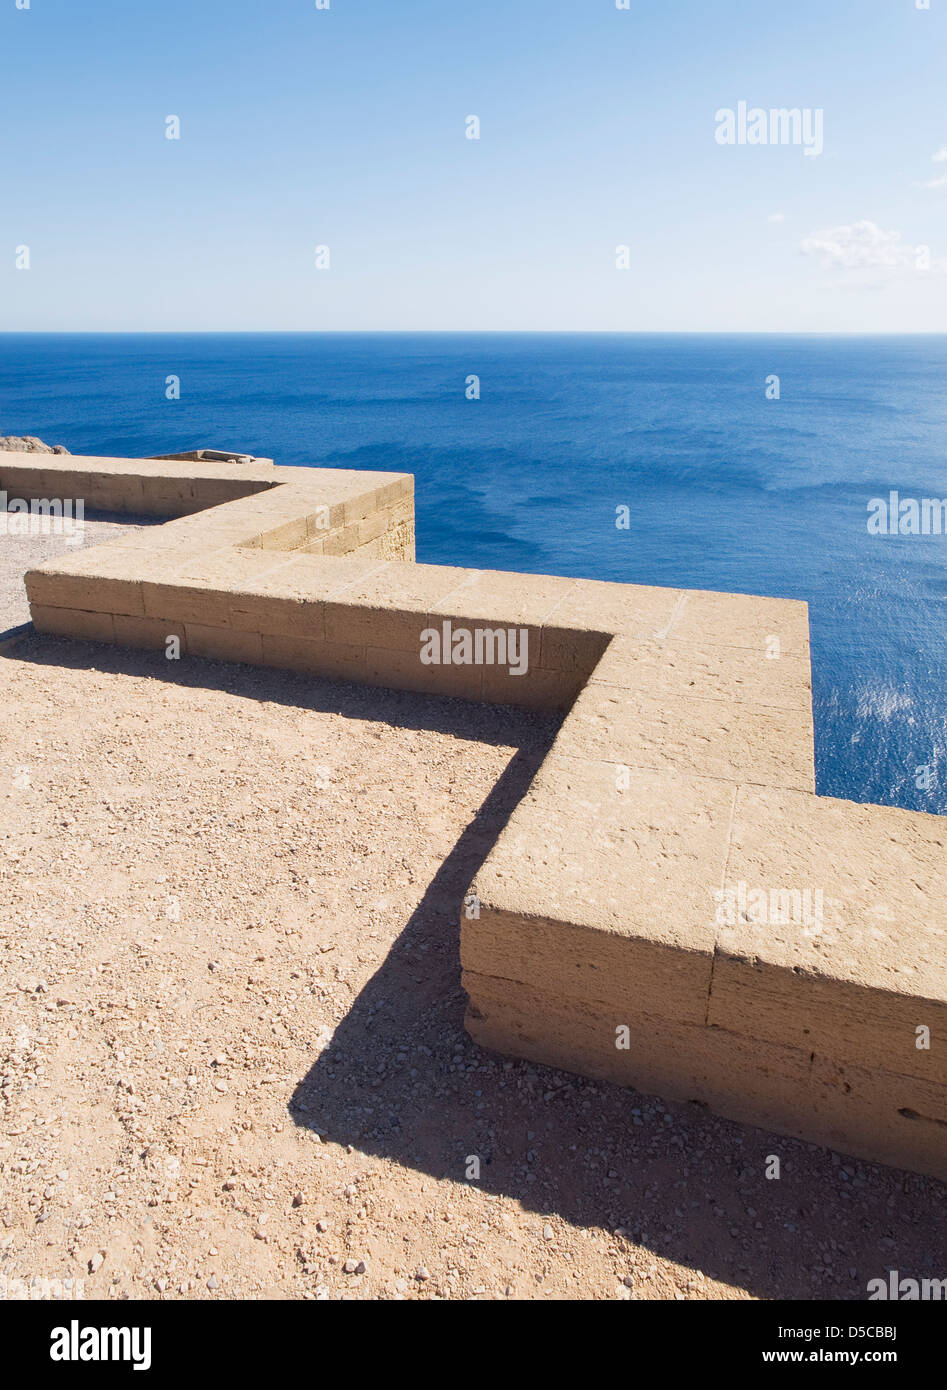 Basso muro di pietra con paesaggi marini. Il parapetto ha una forma a zig-zag e la foto è stata scattata in una giornata di sole Foto Stock